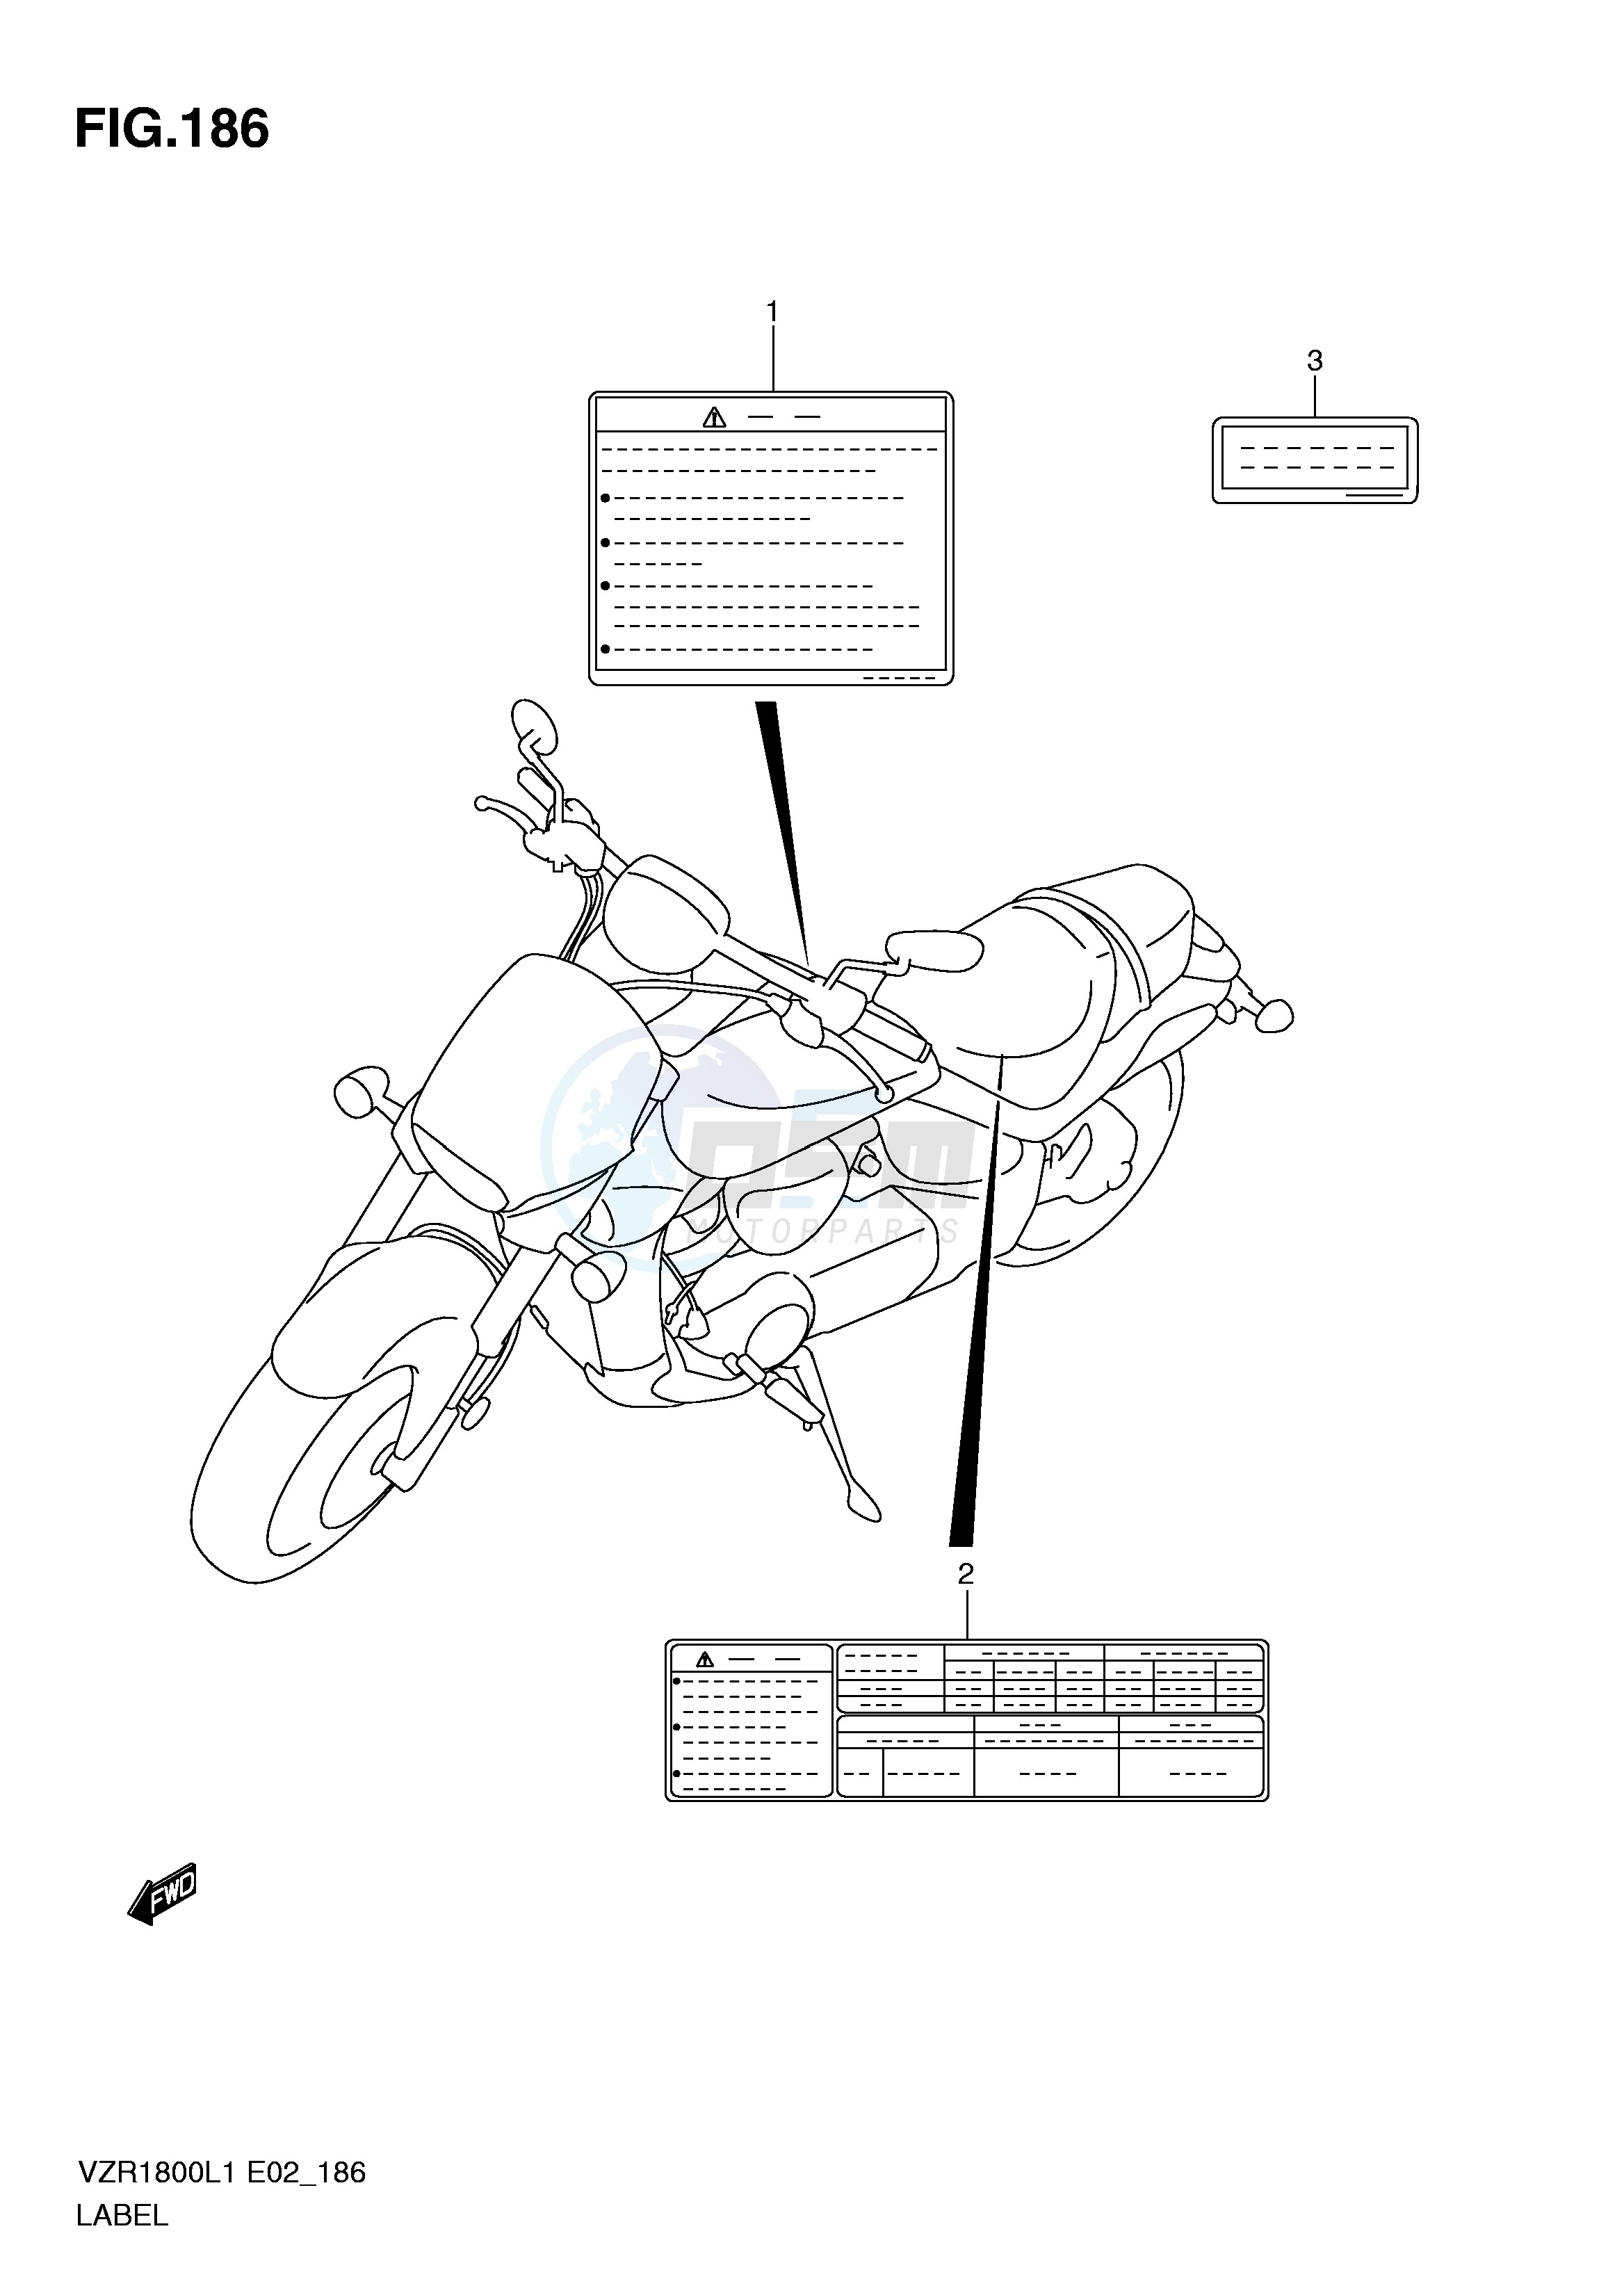 LABEL (VZR1800L1 E51) blueprint